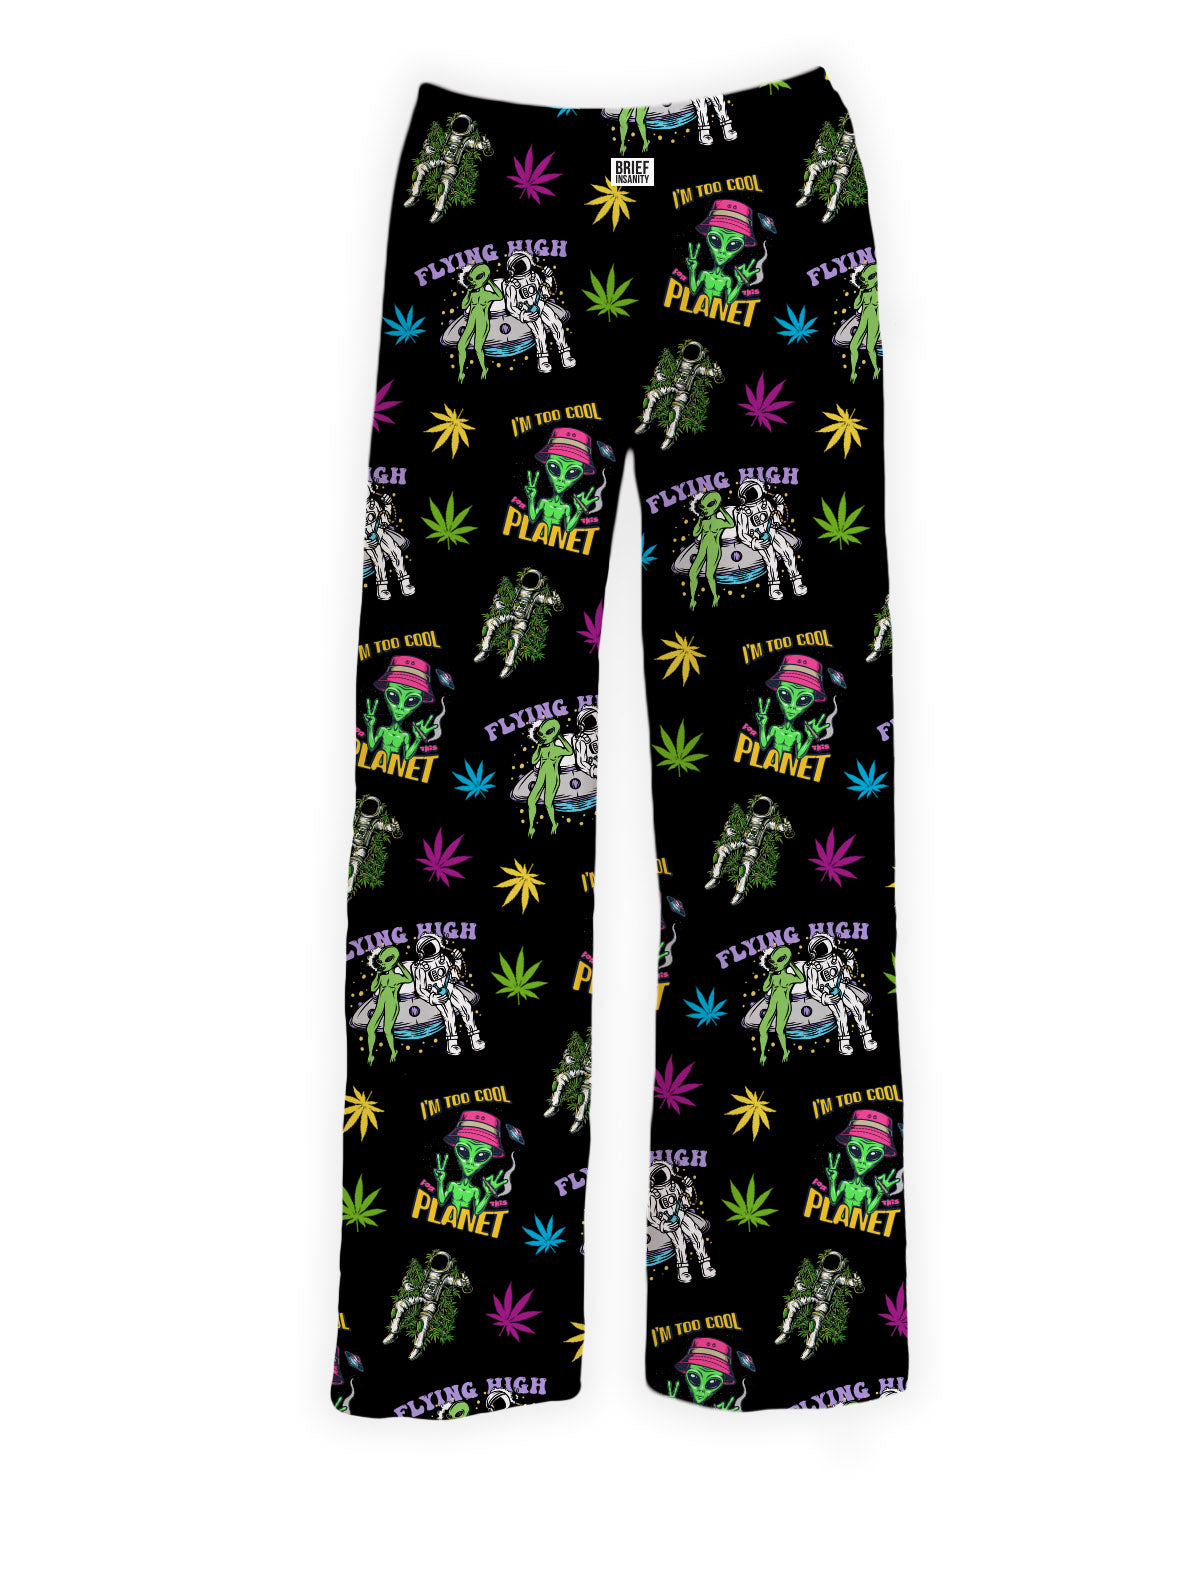 BRIEF INSANITY Alien Weed Pajama Lounge Pants